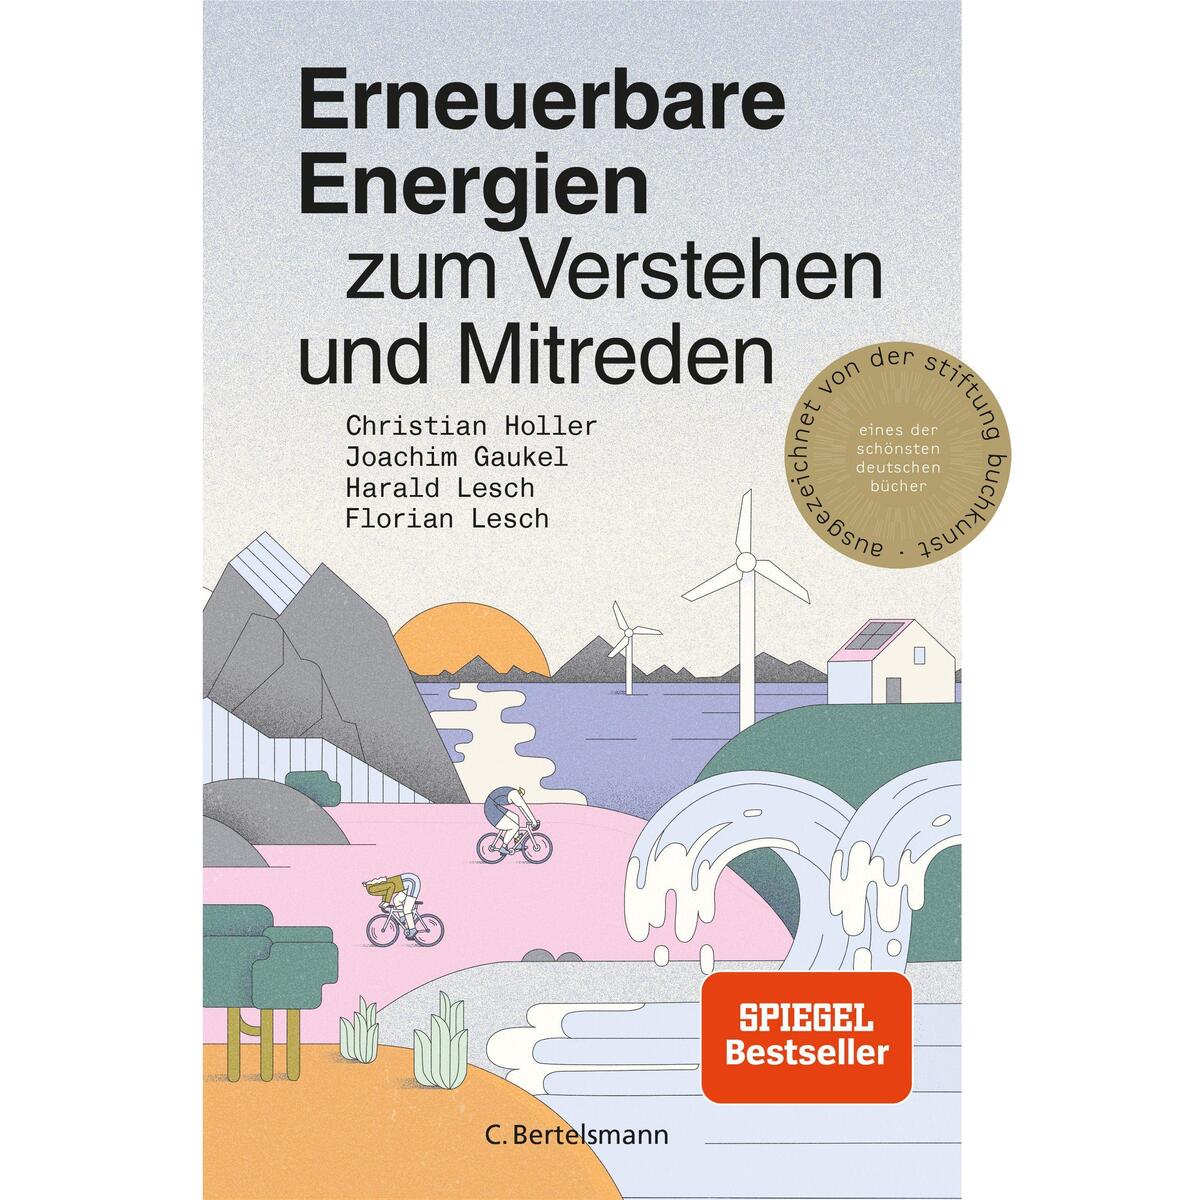 Erneuerbare Energien von C. Bertelsmann Verlag